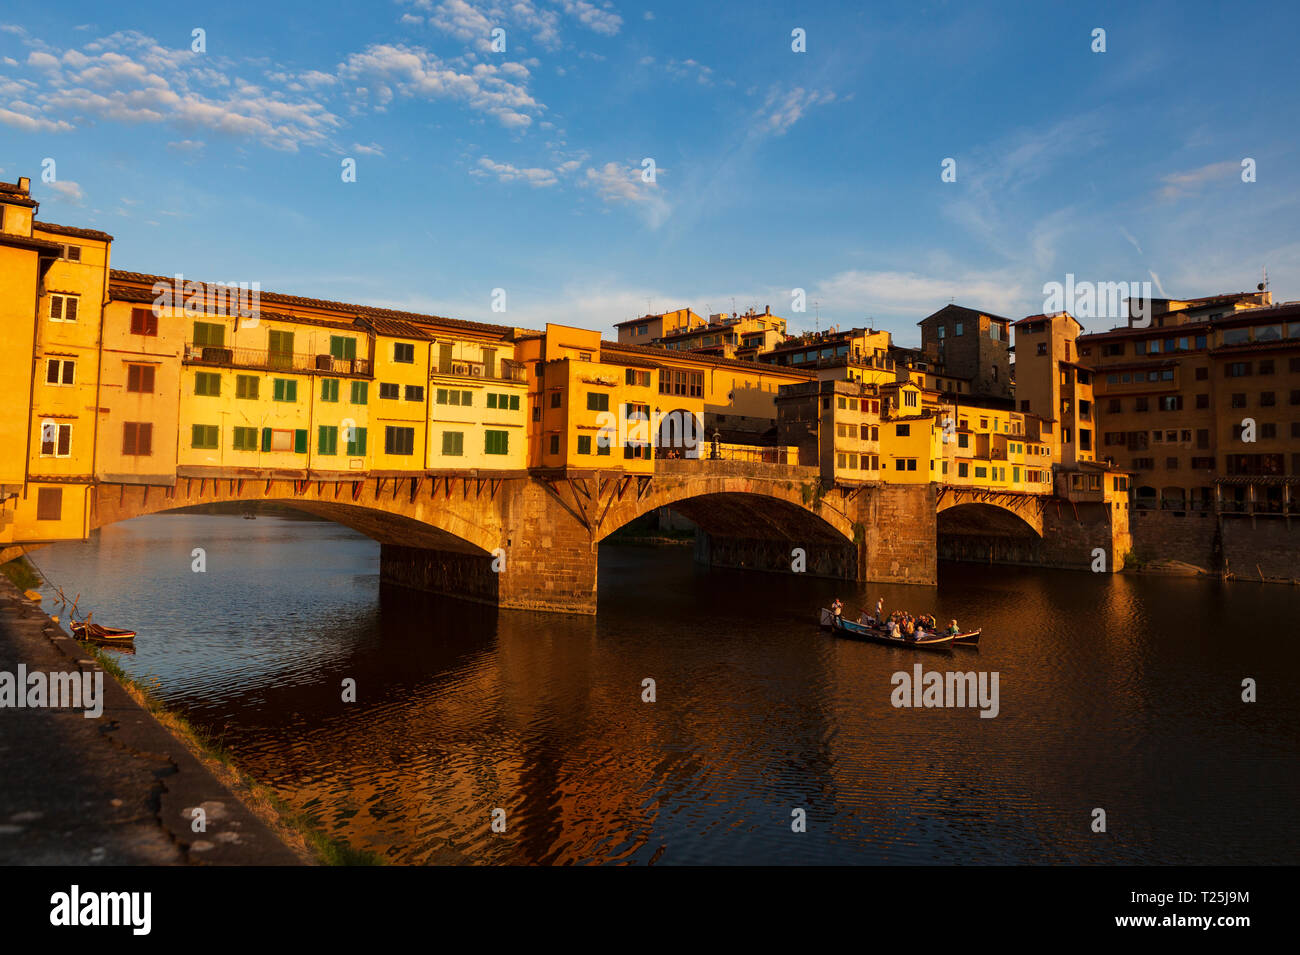 Il Ponte Vecchio, una pietra medievali chiuso-spandrel arco ponte sopra il fiume Arno a Firenze, nota per aventi ancora negozi costruiti Foto Stock